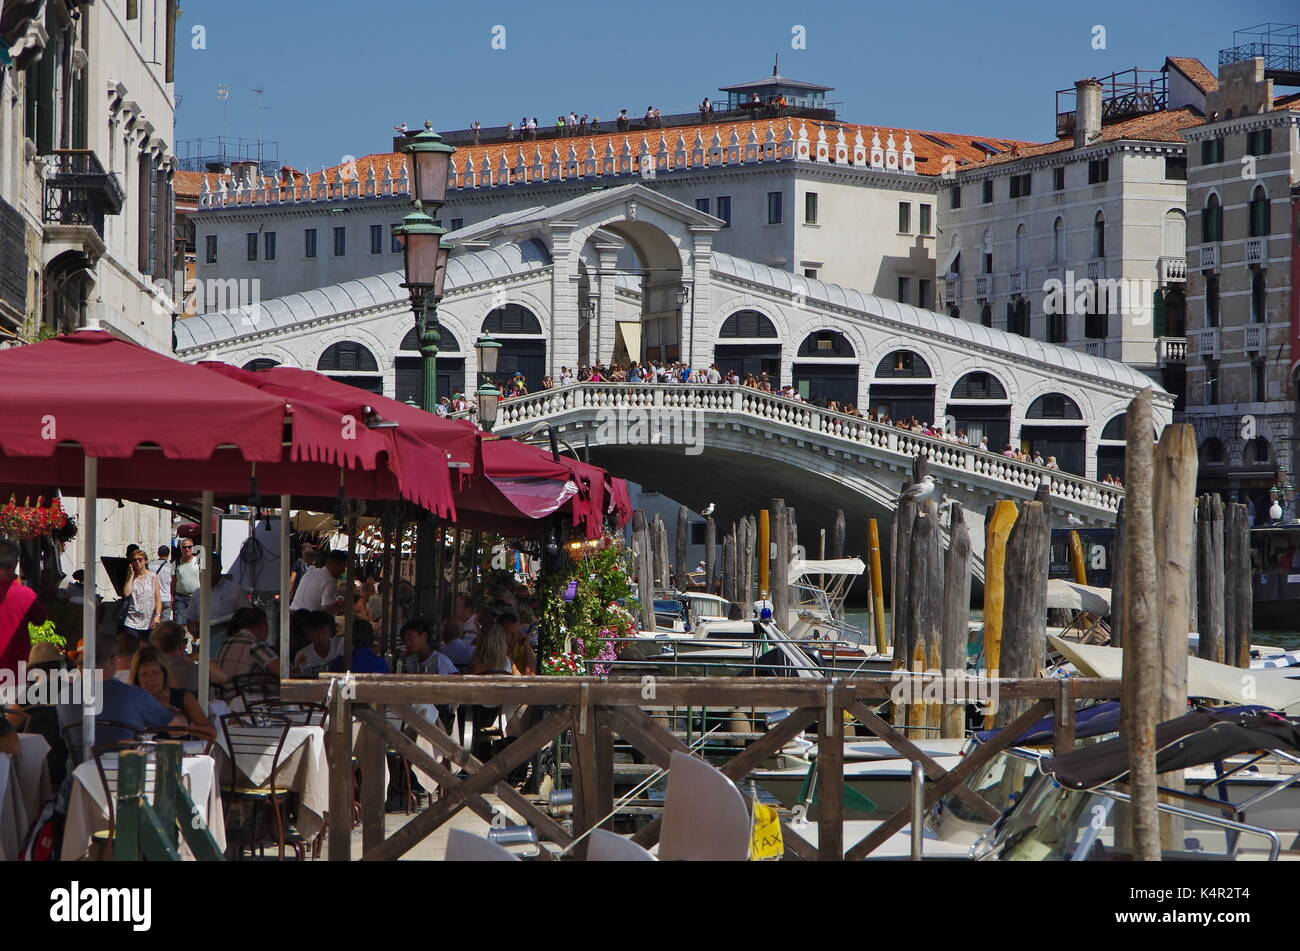 Venise, il - 29 août, 2017 - Pont du Rialto et le grand canal à Venise, Italie. Rialto est le plus grand pont à Venise Banque D'Images